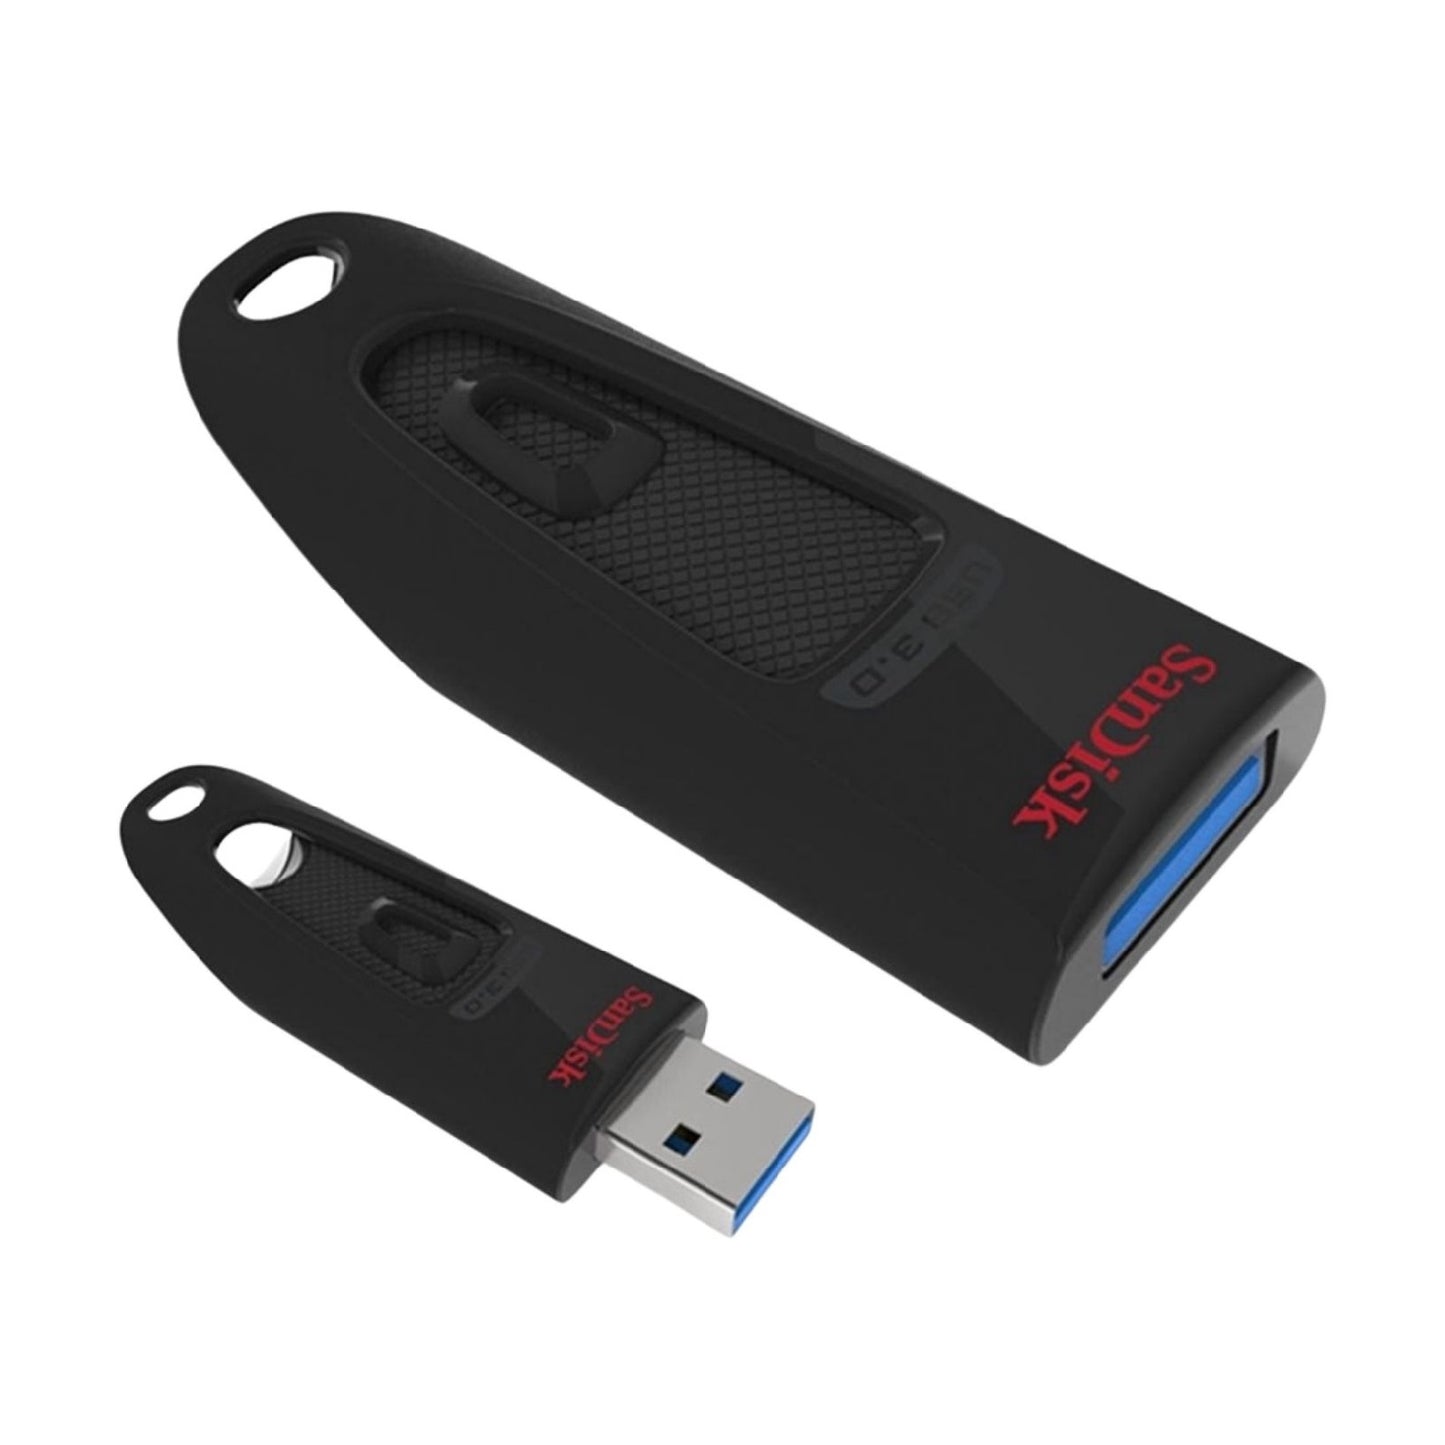 SanDisk Ultra CZ48 128GB 130MB/S USB 3.0 Flash Drive Memory Stick Pen PC MAC